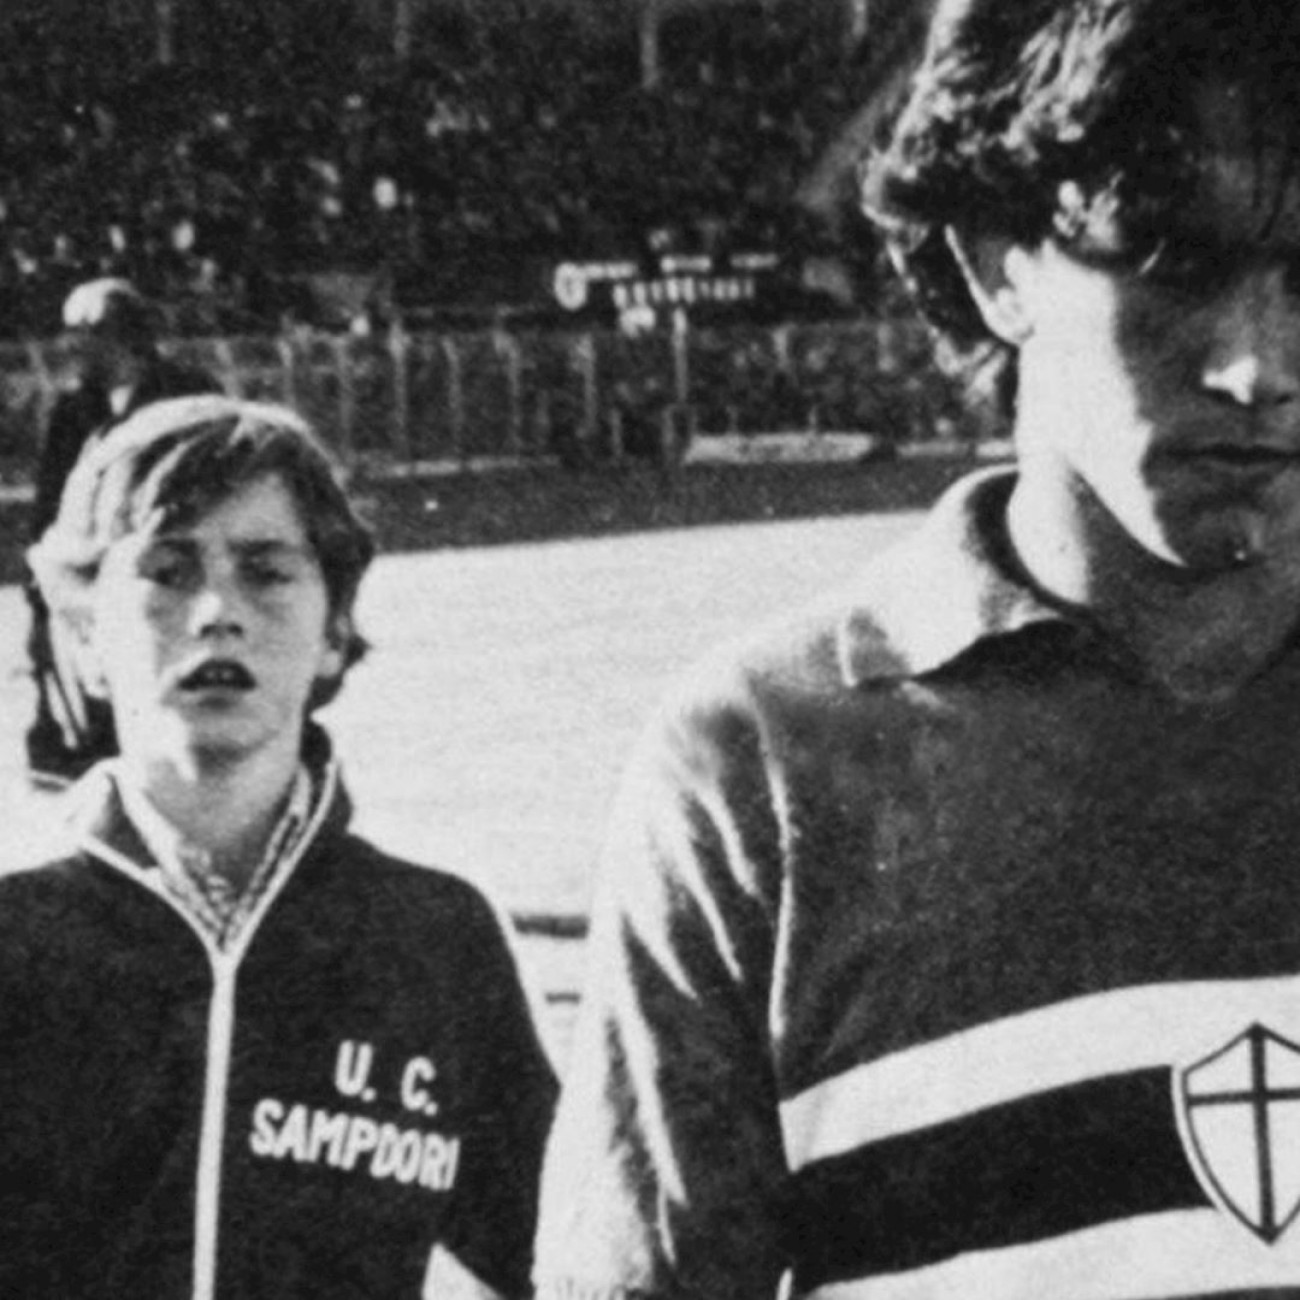 U Sampdoria 1979-80 Retro Football Jacket C 